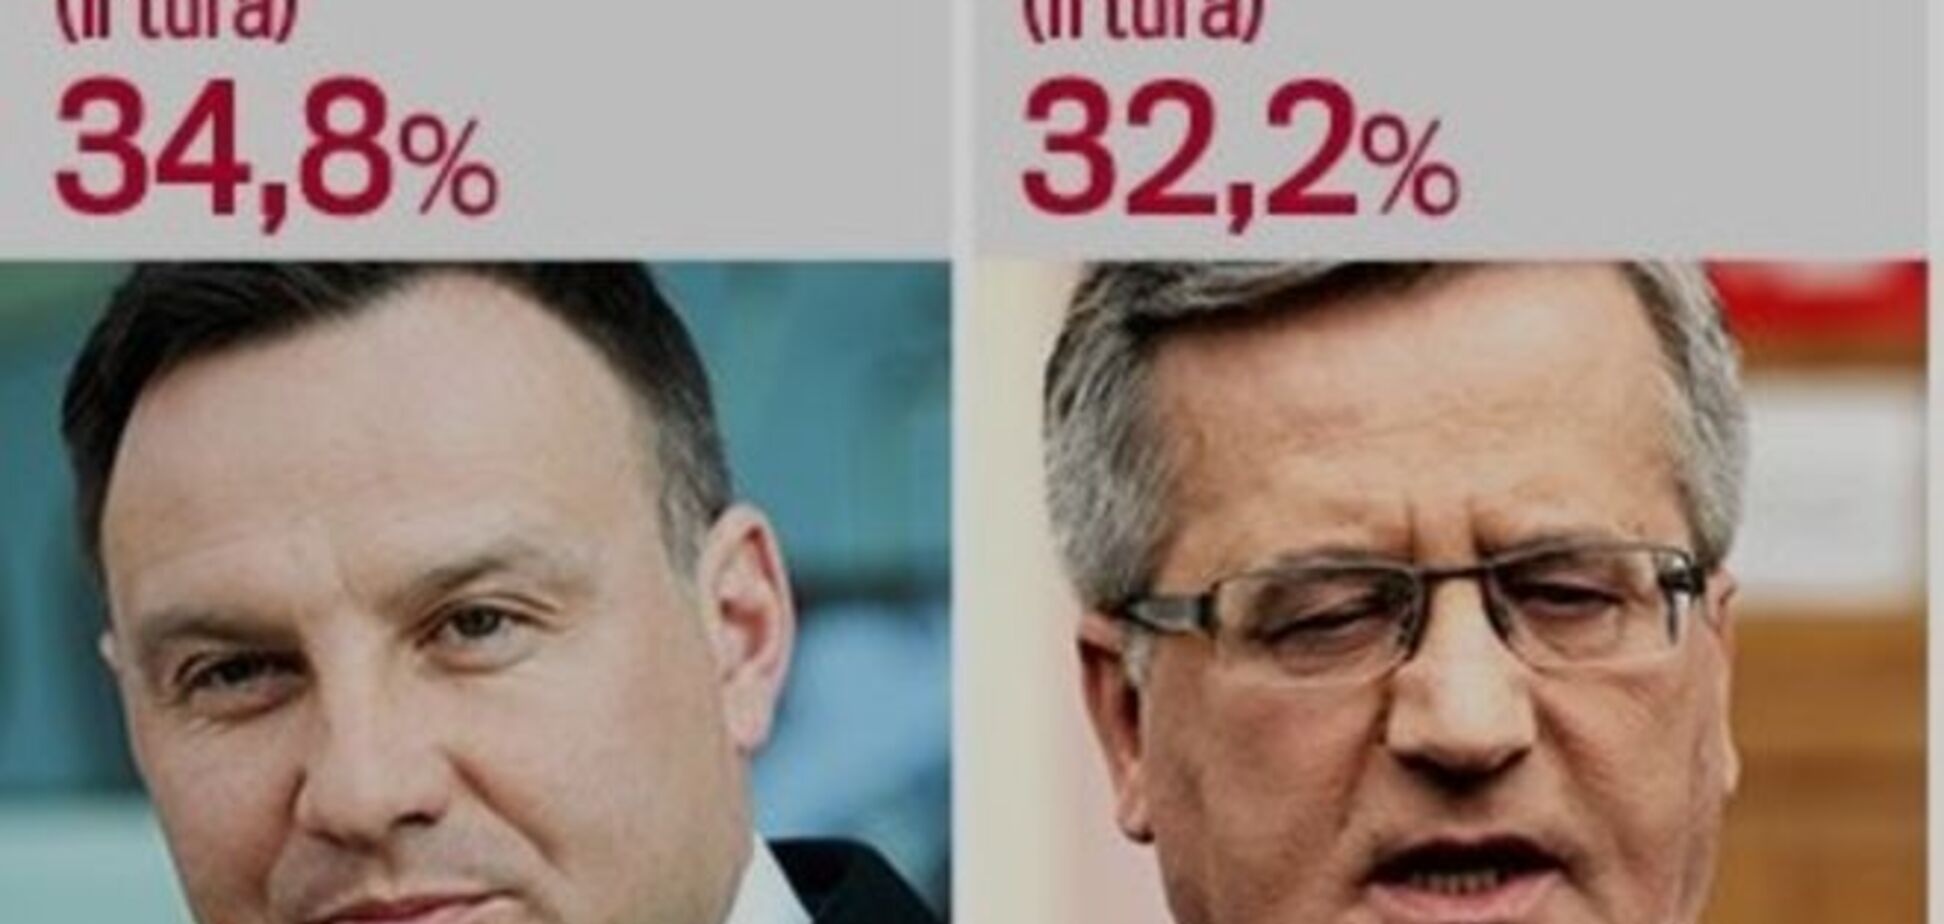 Первый тур выборов в Польше сенсационно выиграл Дуда